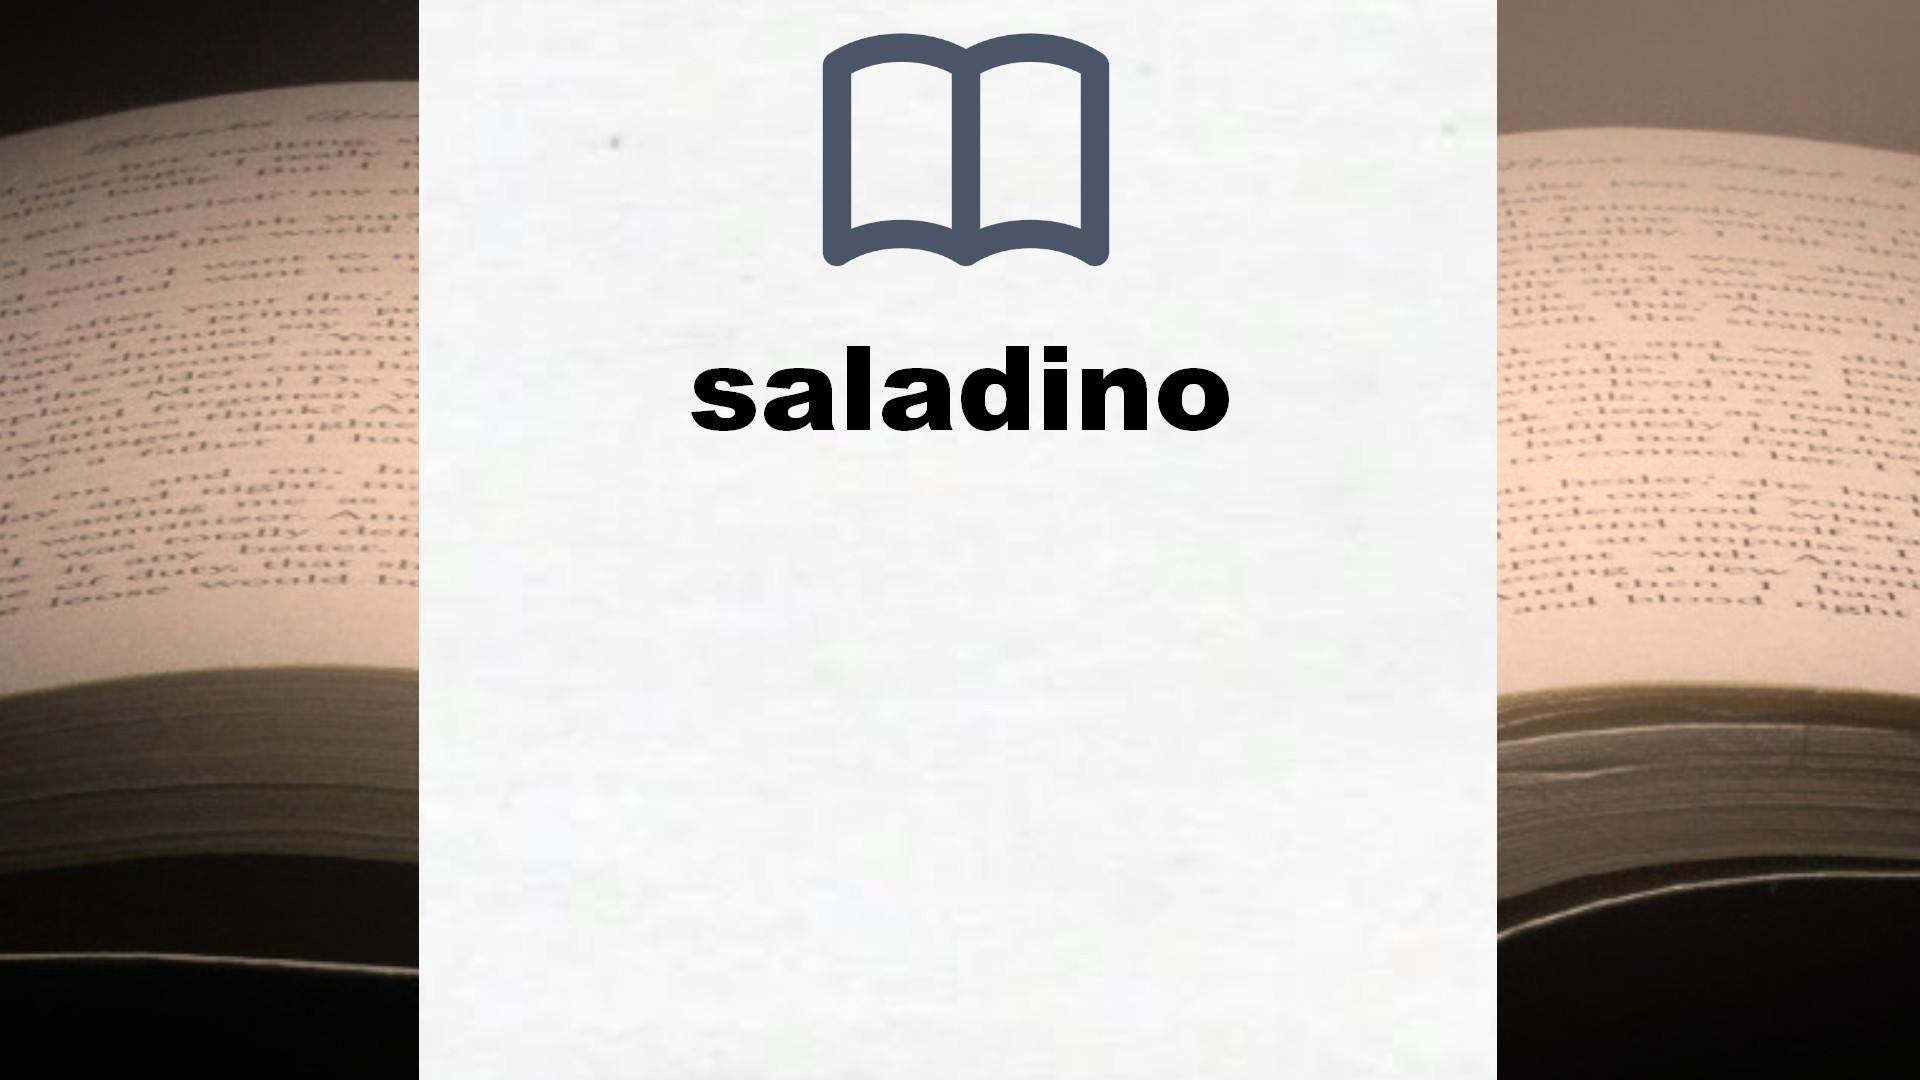 Libros sobre saladino